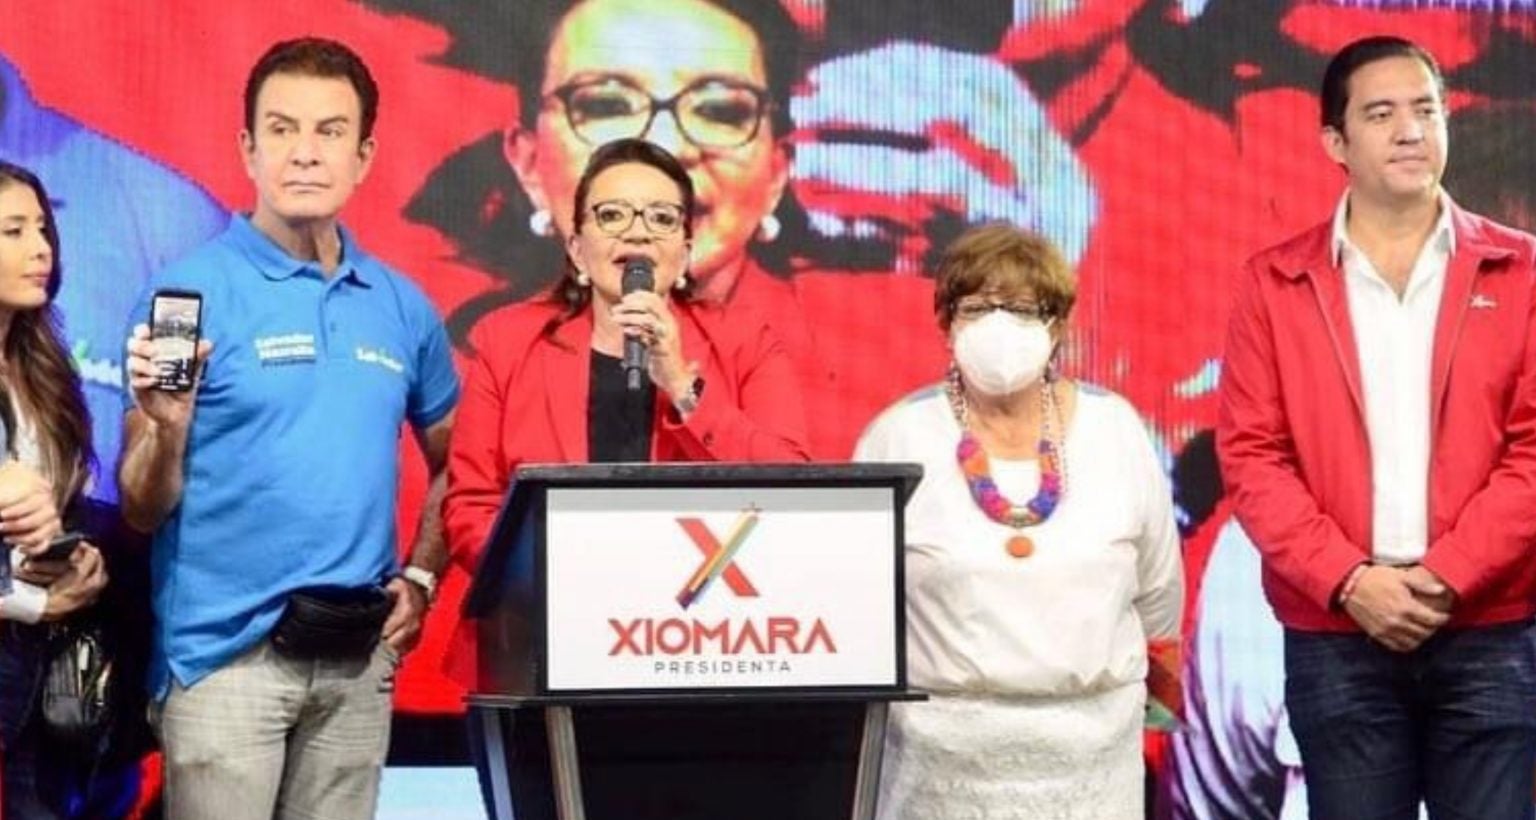 Xiomara sería la primera mujer en asumir la presidencia en Honduras.